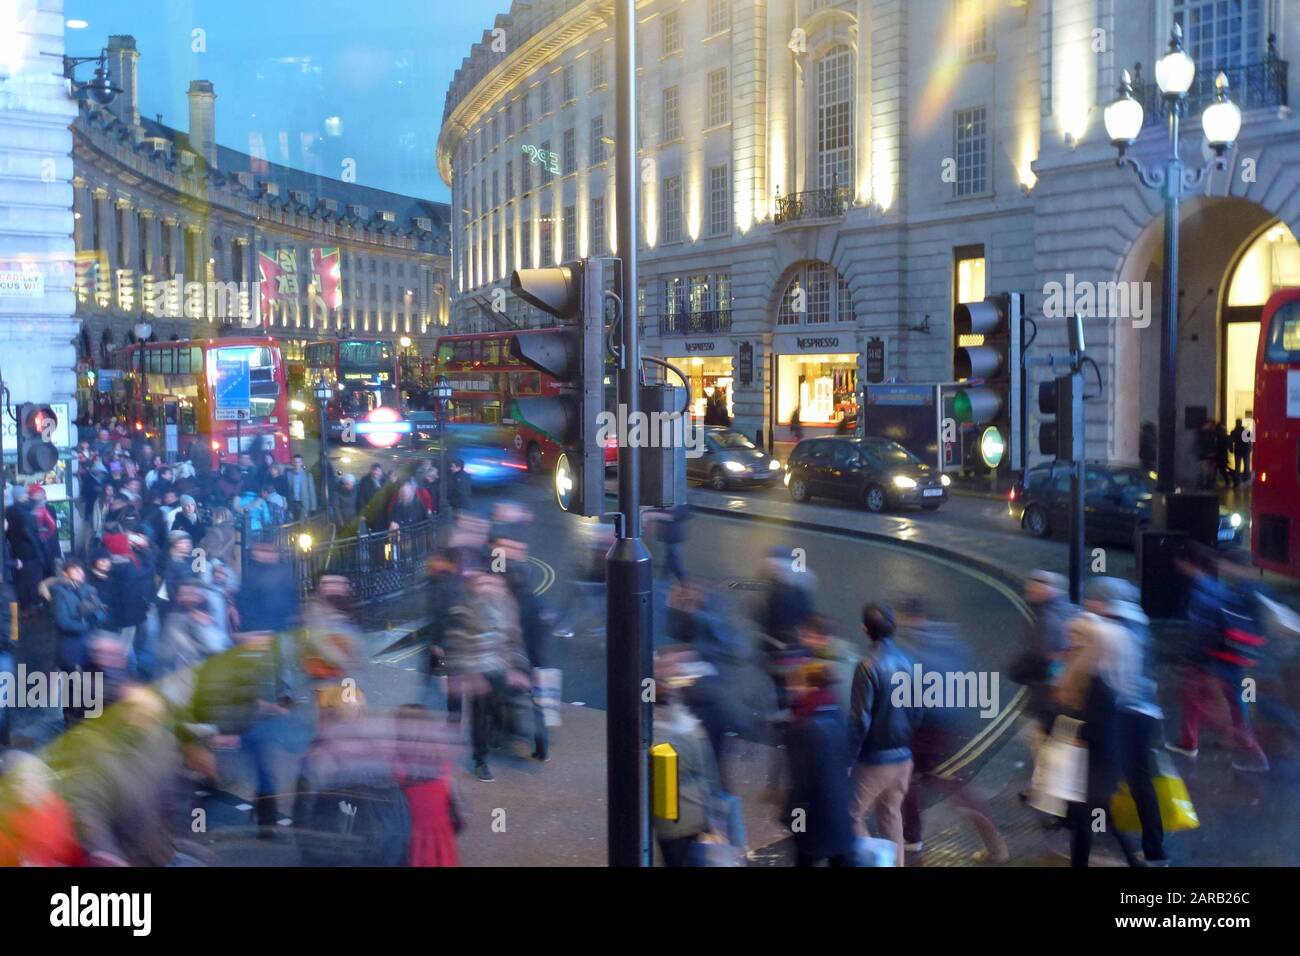 Bustling busy high street scene in Regent street London taken with slow speed shutter Stock Photo